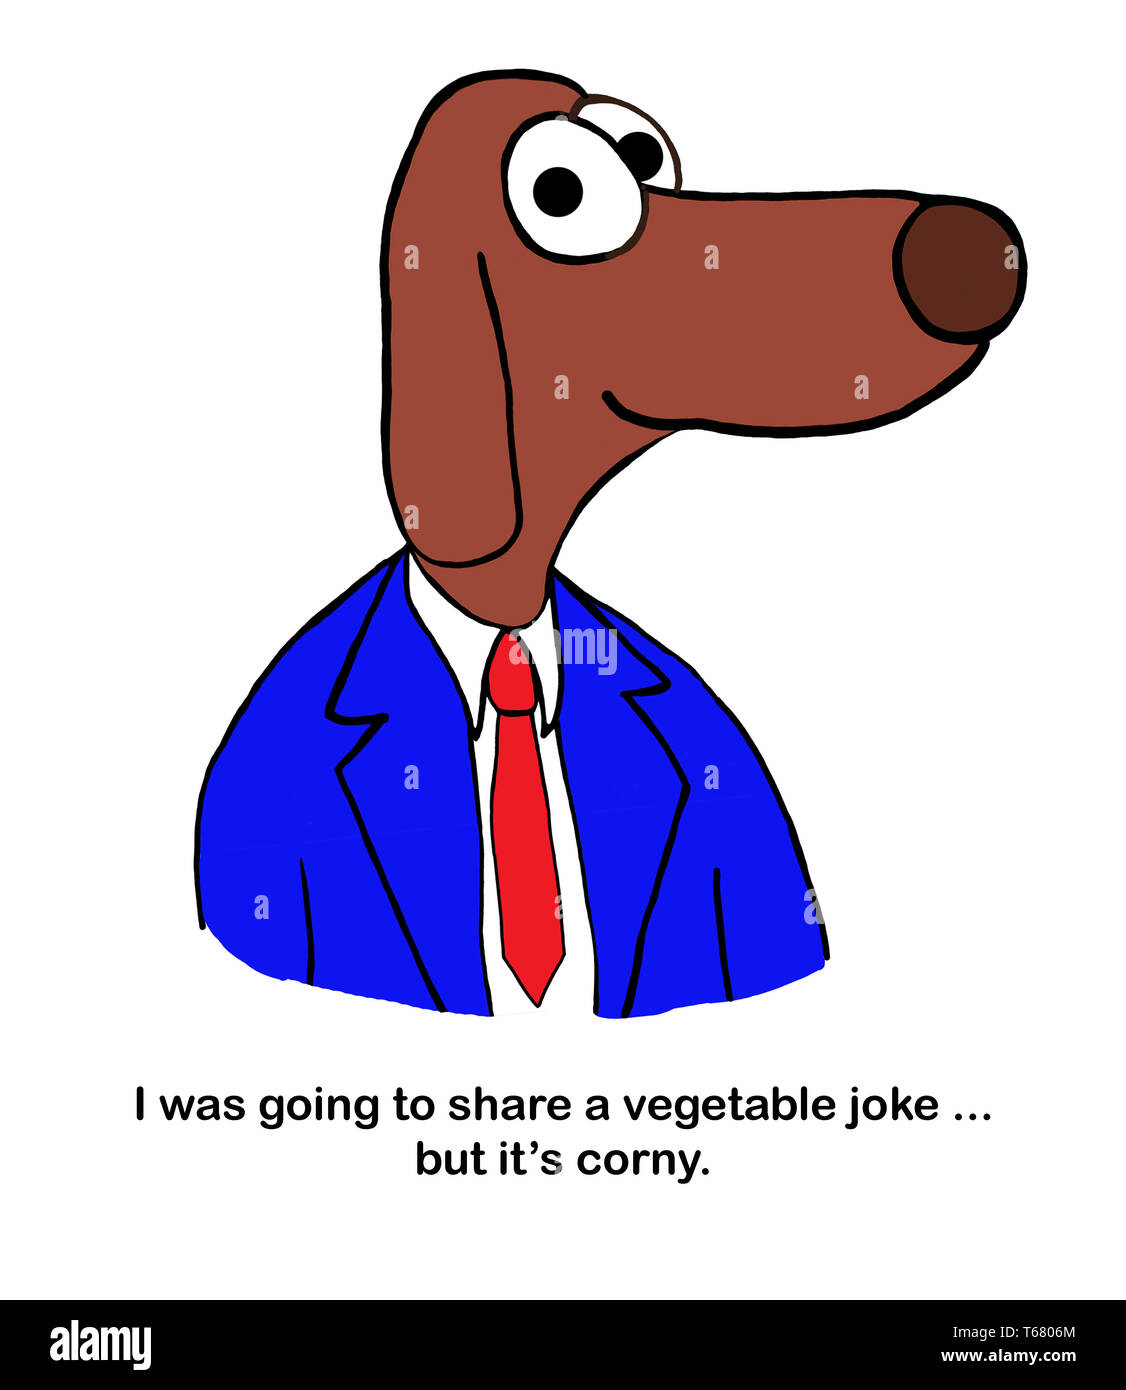 Insegnante di cane parla di scherzo di verdure corny. Foto Stock